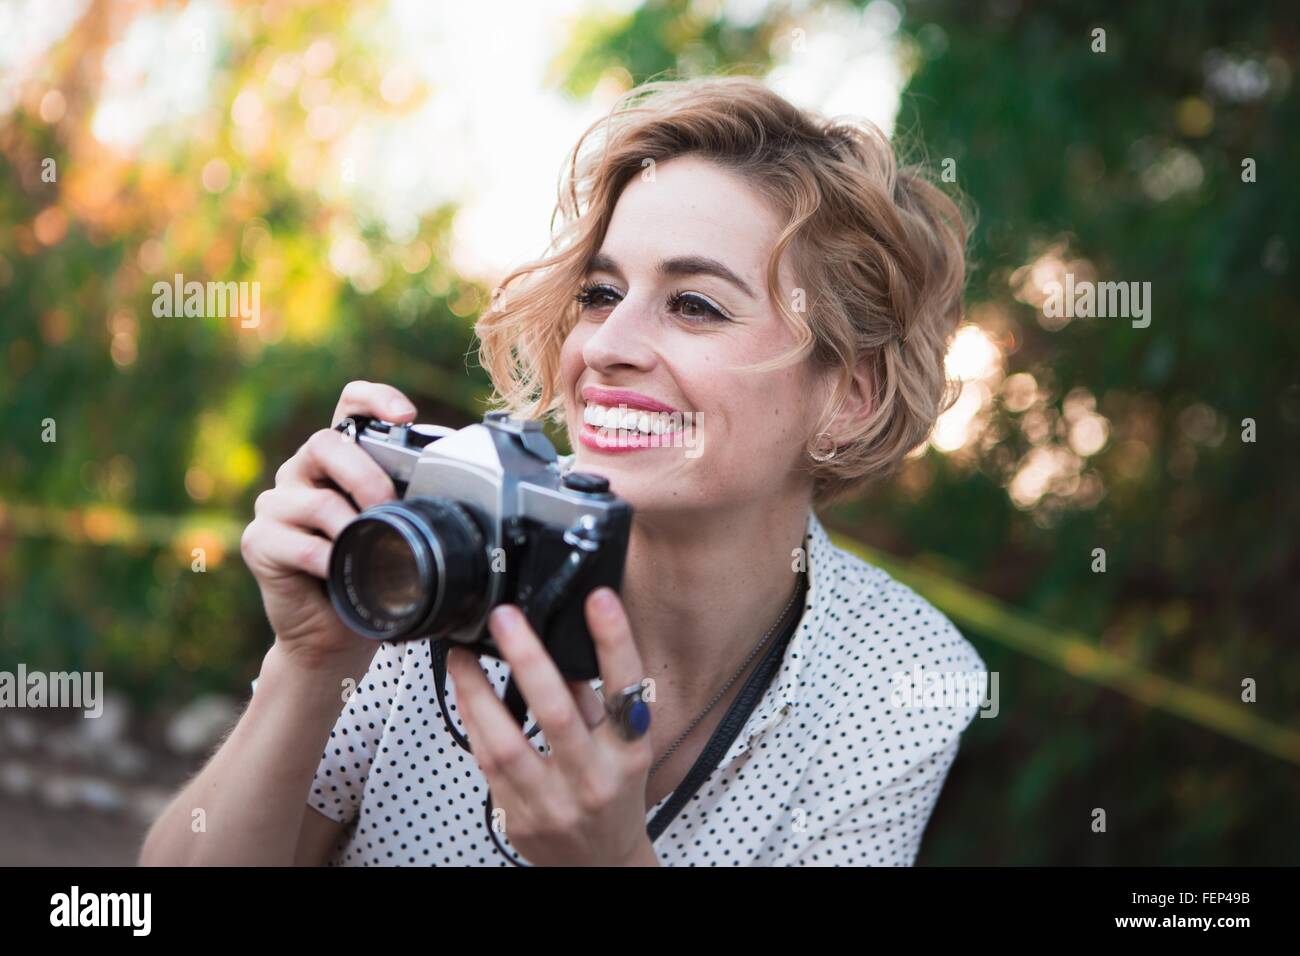 Metà donna adulta prendendo fotografie, all'aperto, sorridente Foto Stock